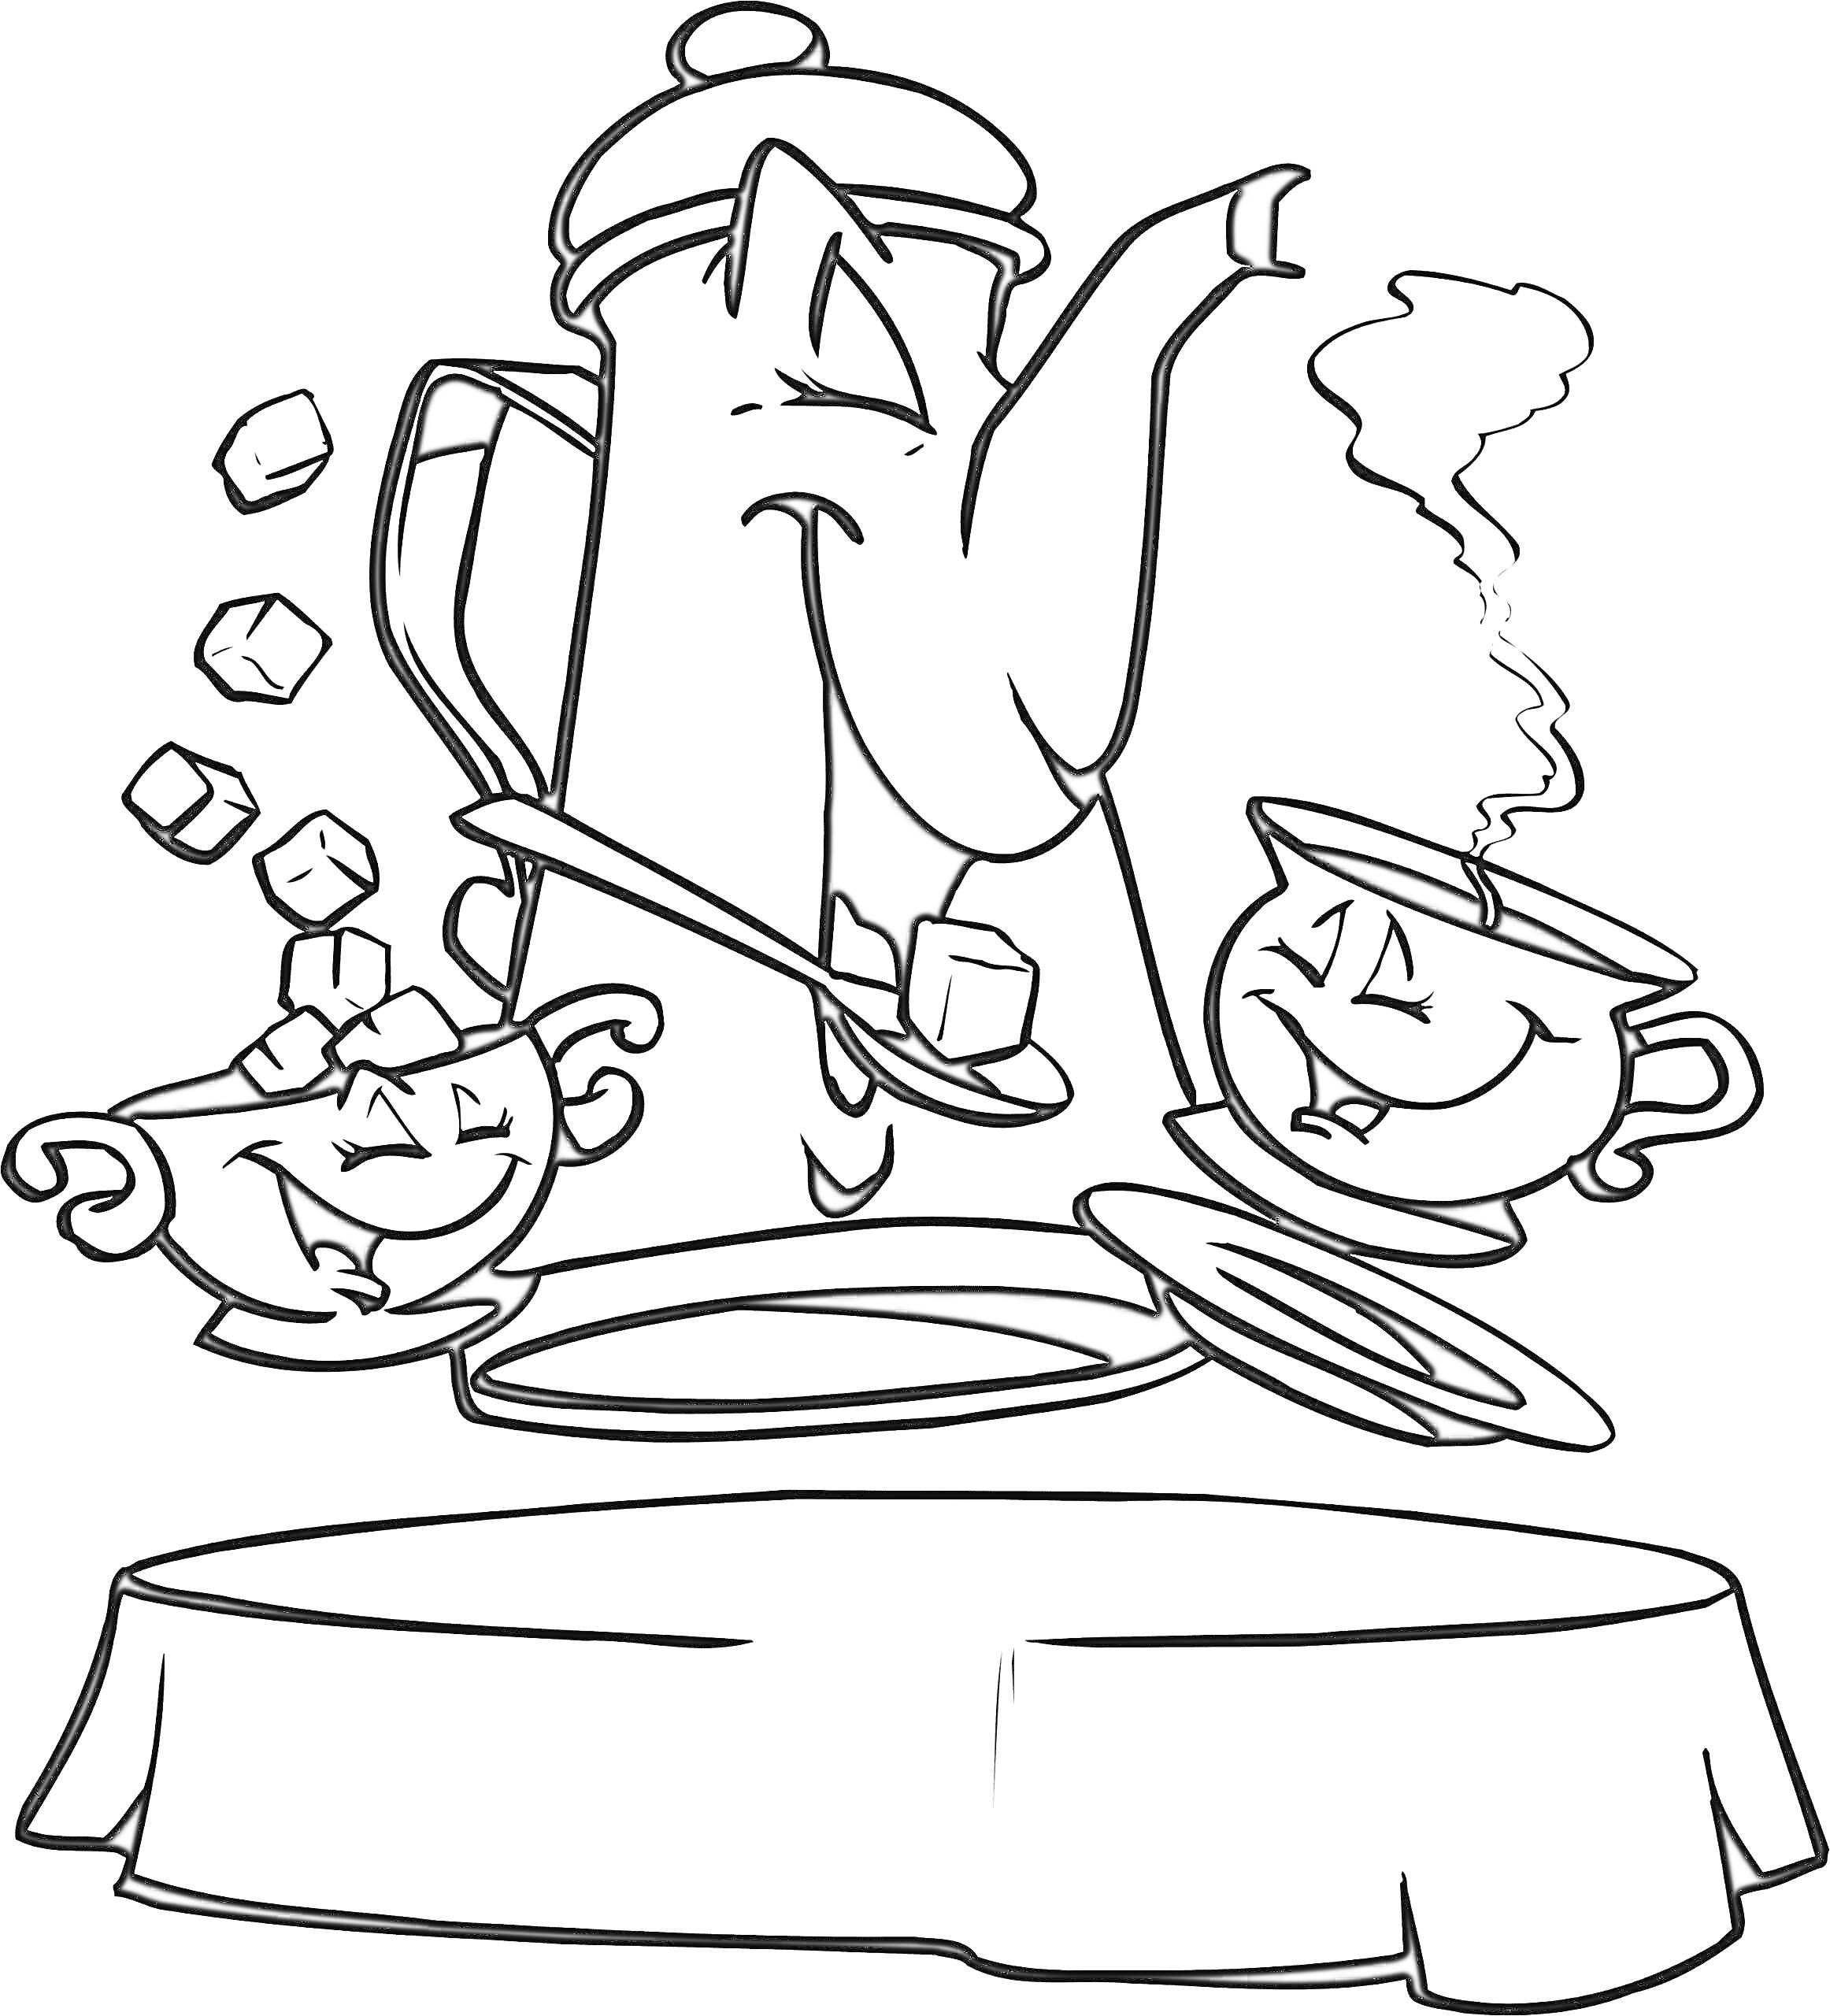  Радостный чайник с чашками и кубиками сахара на столе